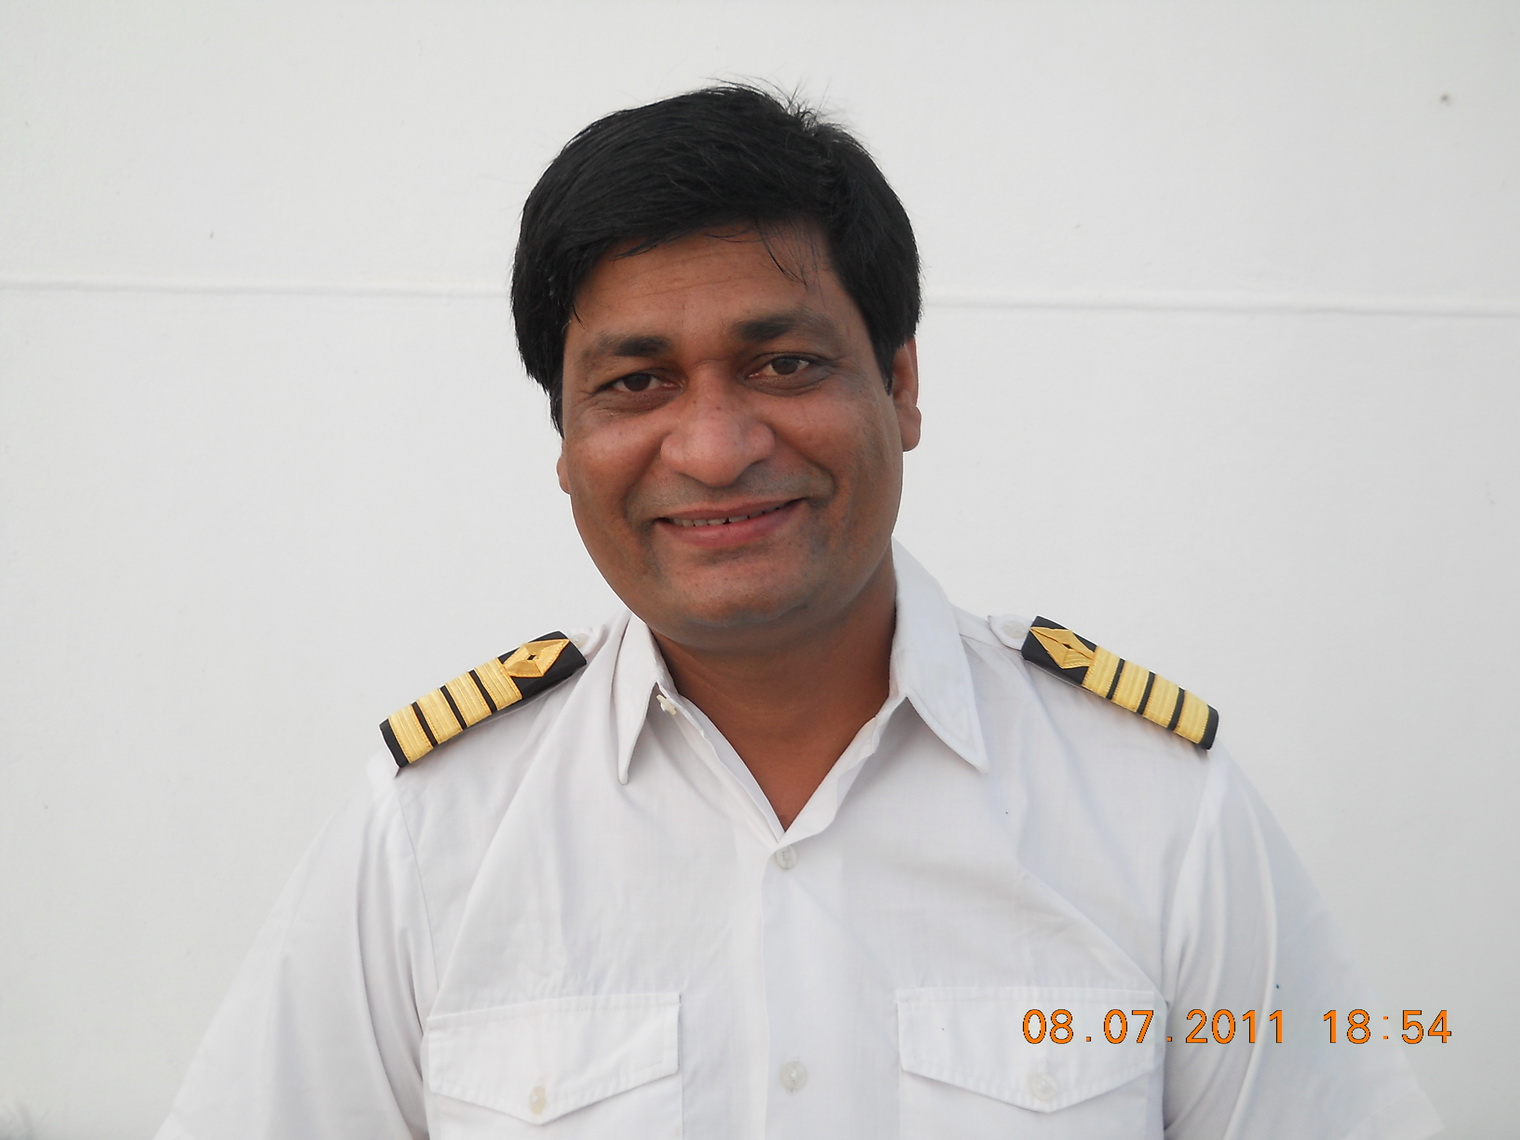 Md. Arif Chowdhury 